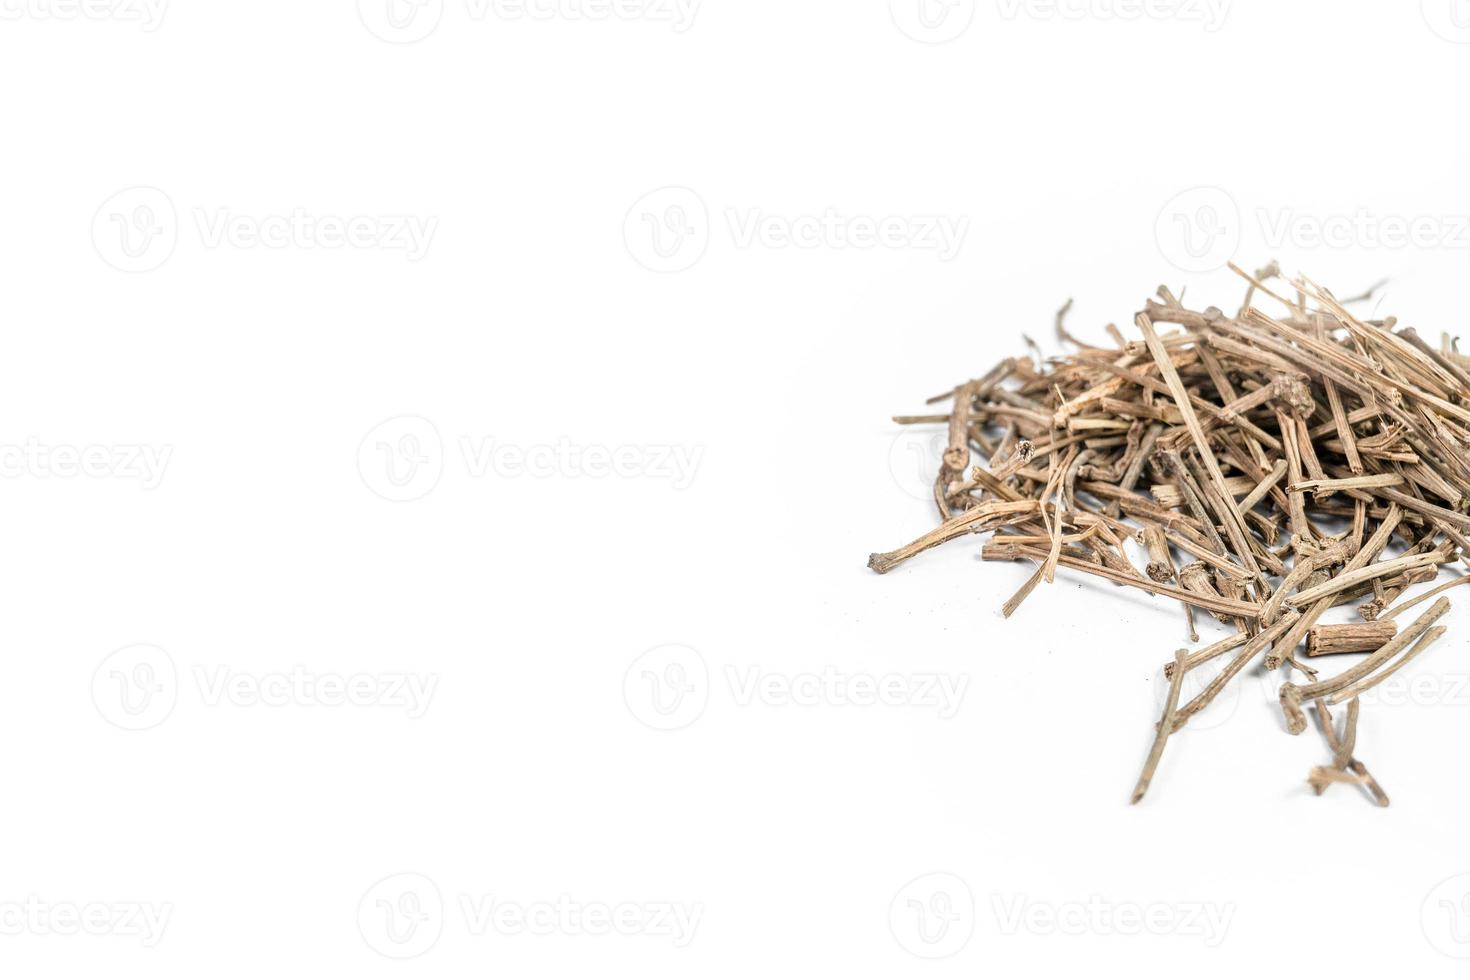 organisk torr skäller av indisk jalap eller nishodh eller operculina turpetum isolerat på vit bakgrund foto